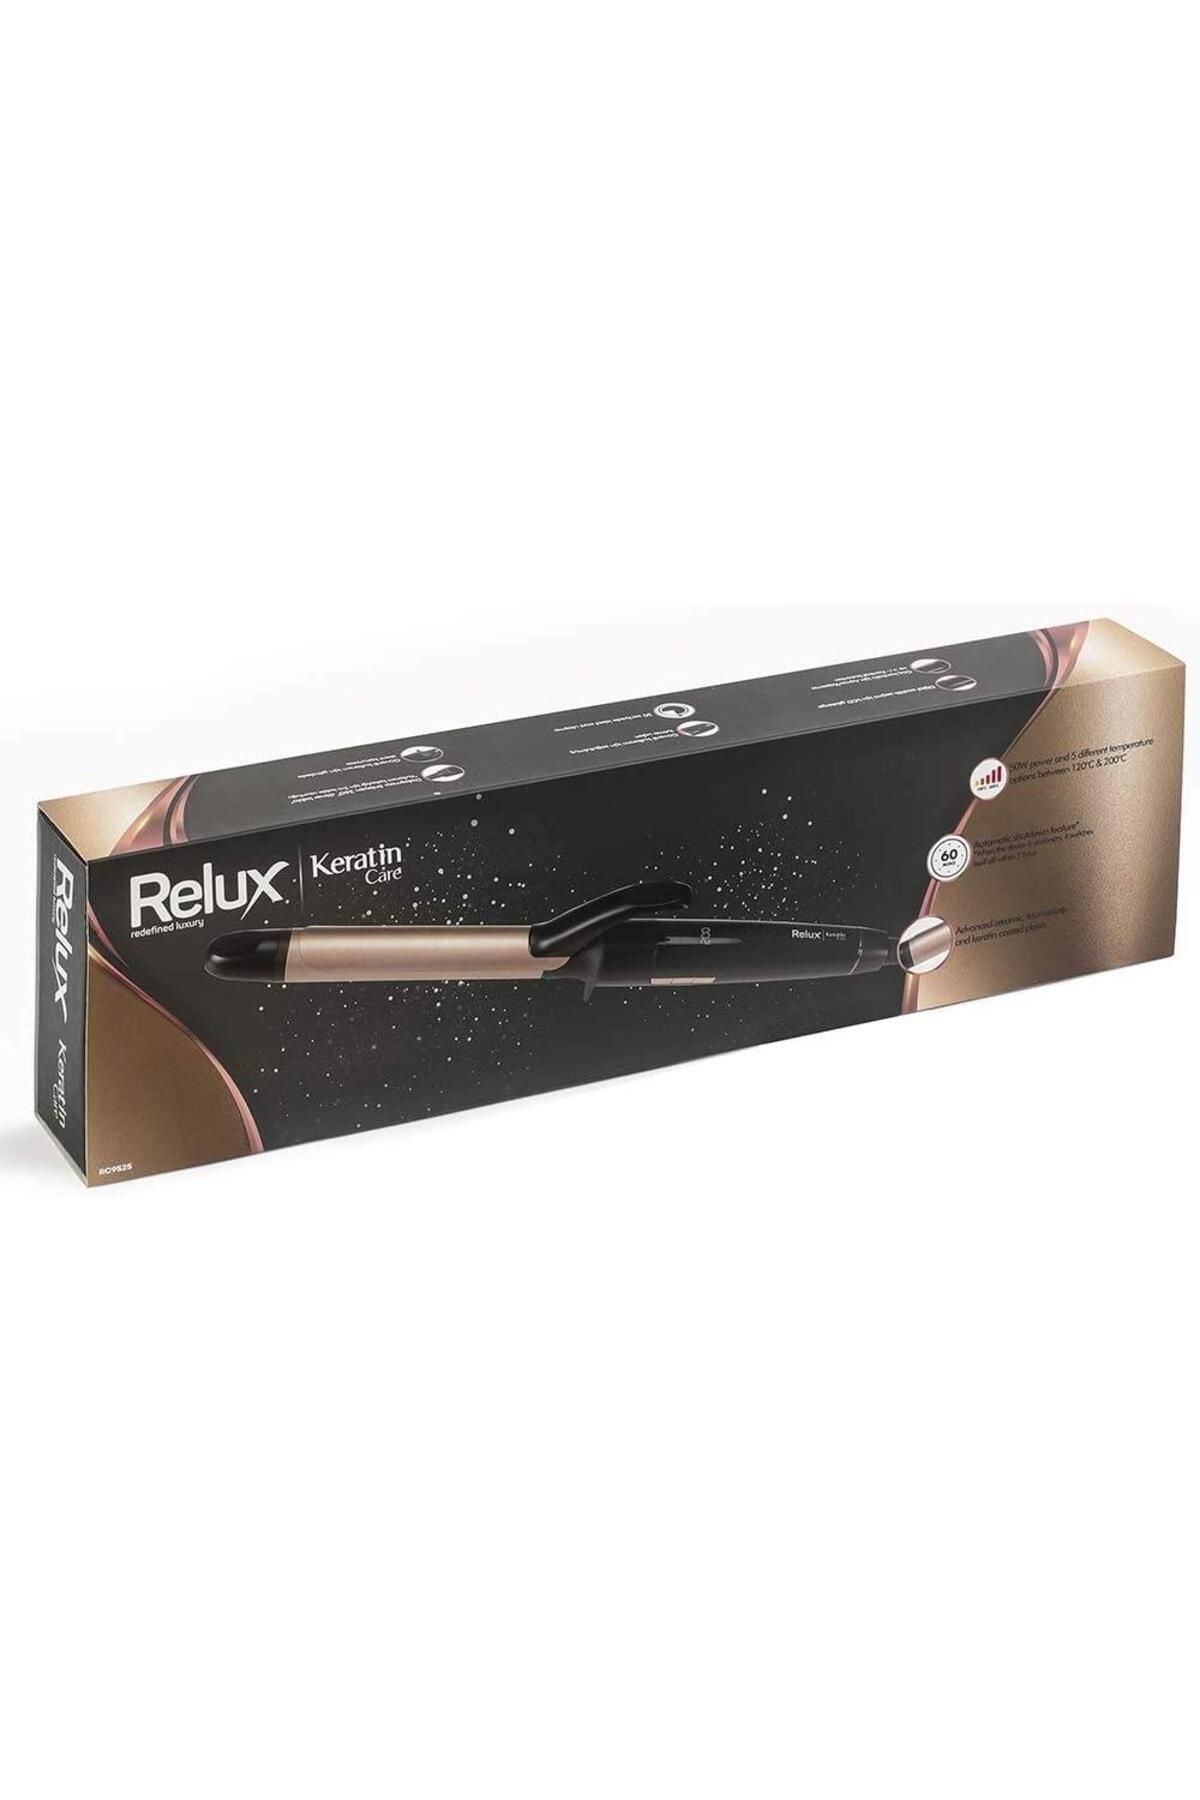 Relux Rc9525 Keratincare 25 Mm Keratin